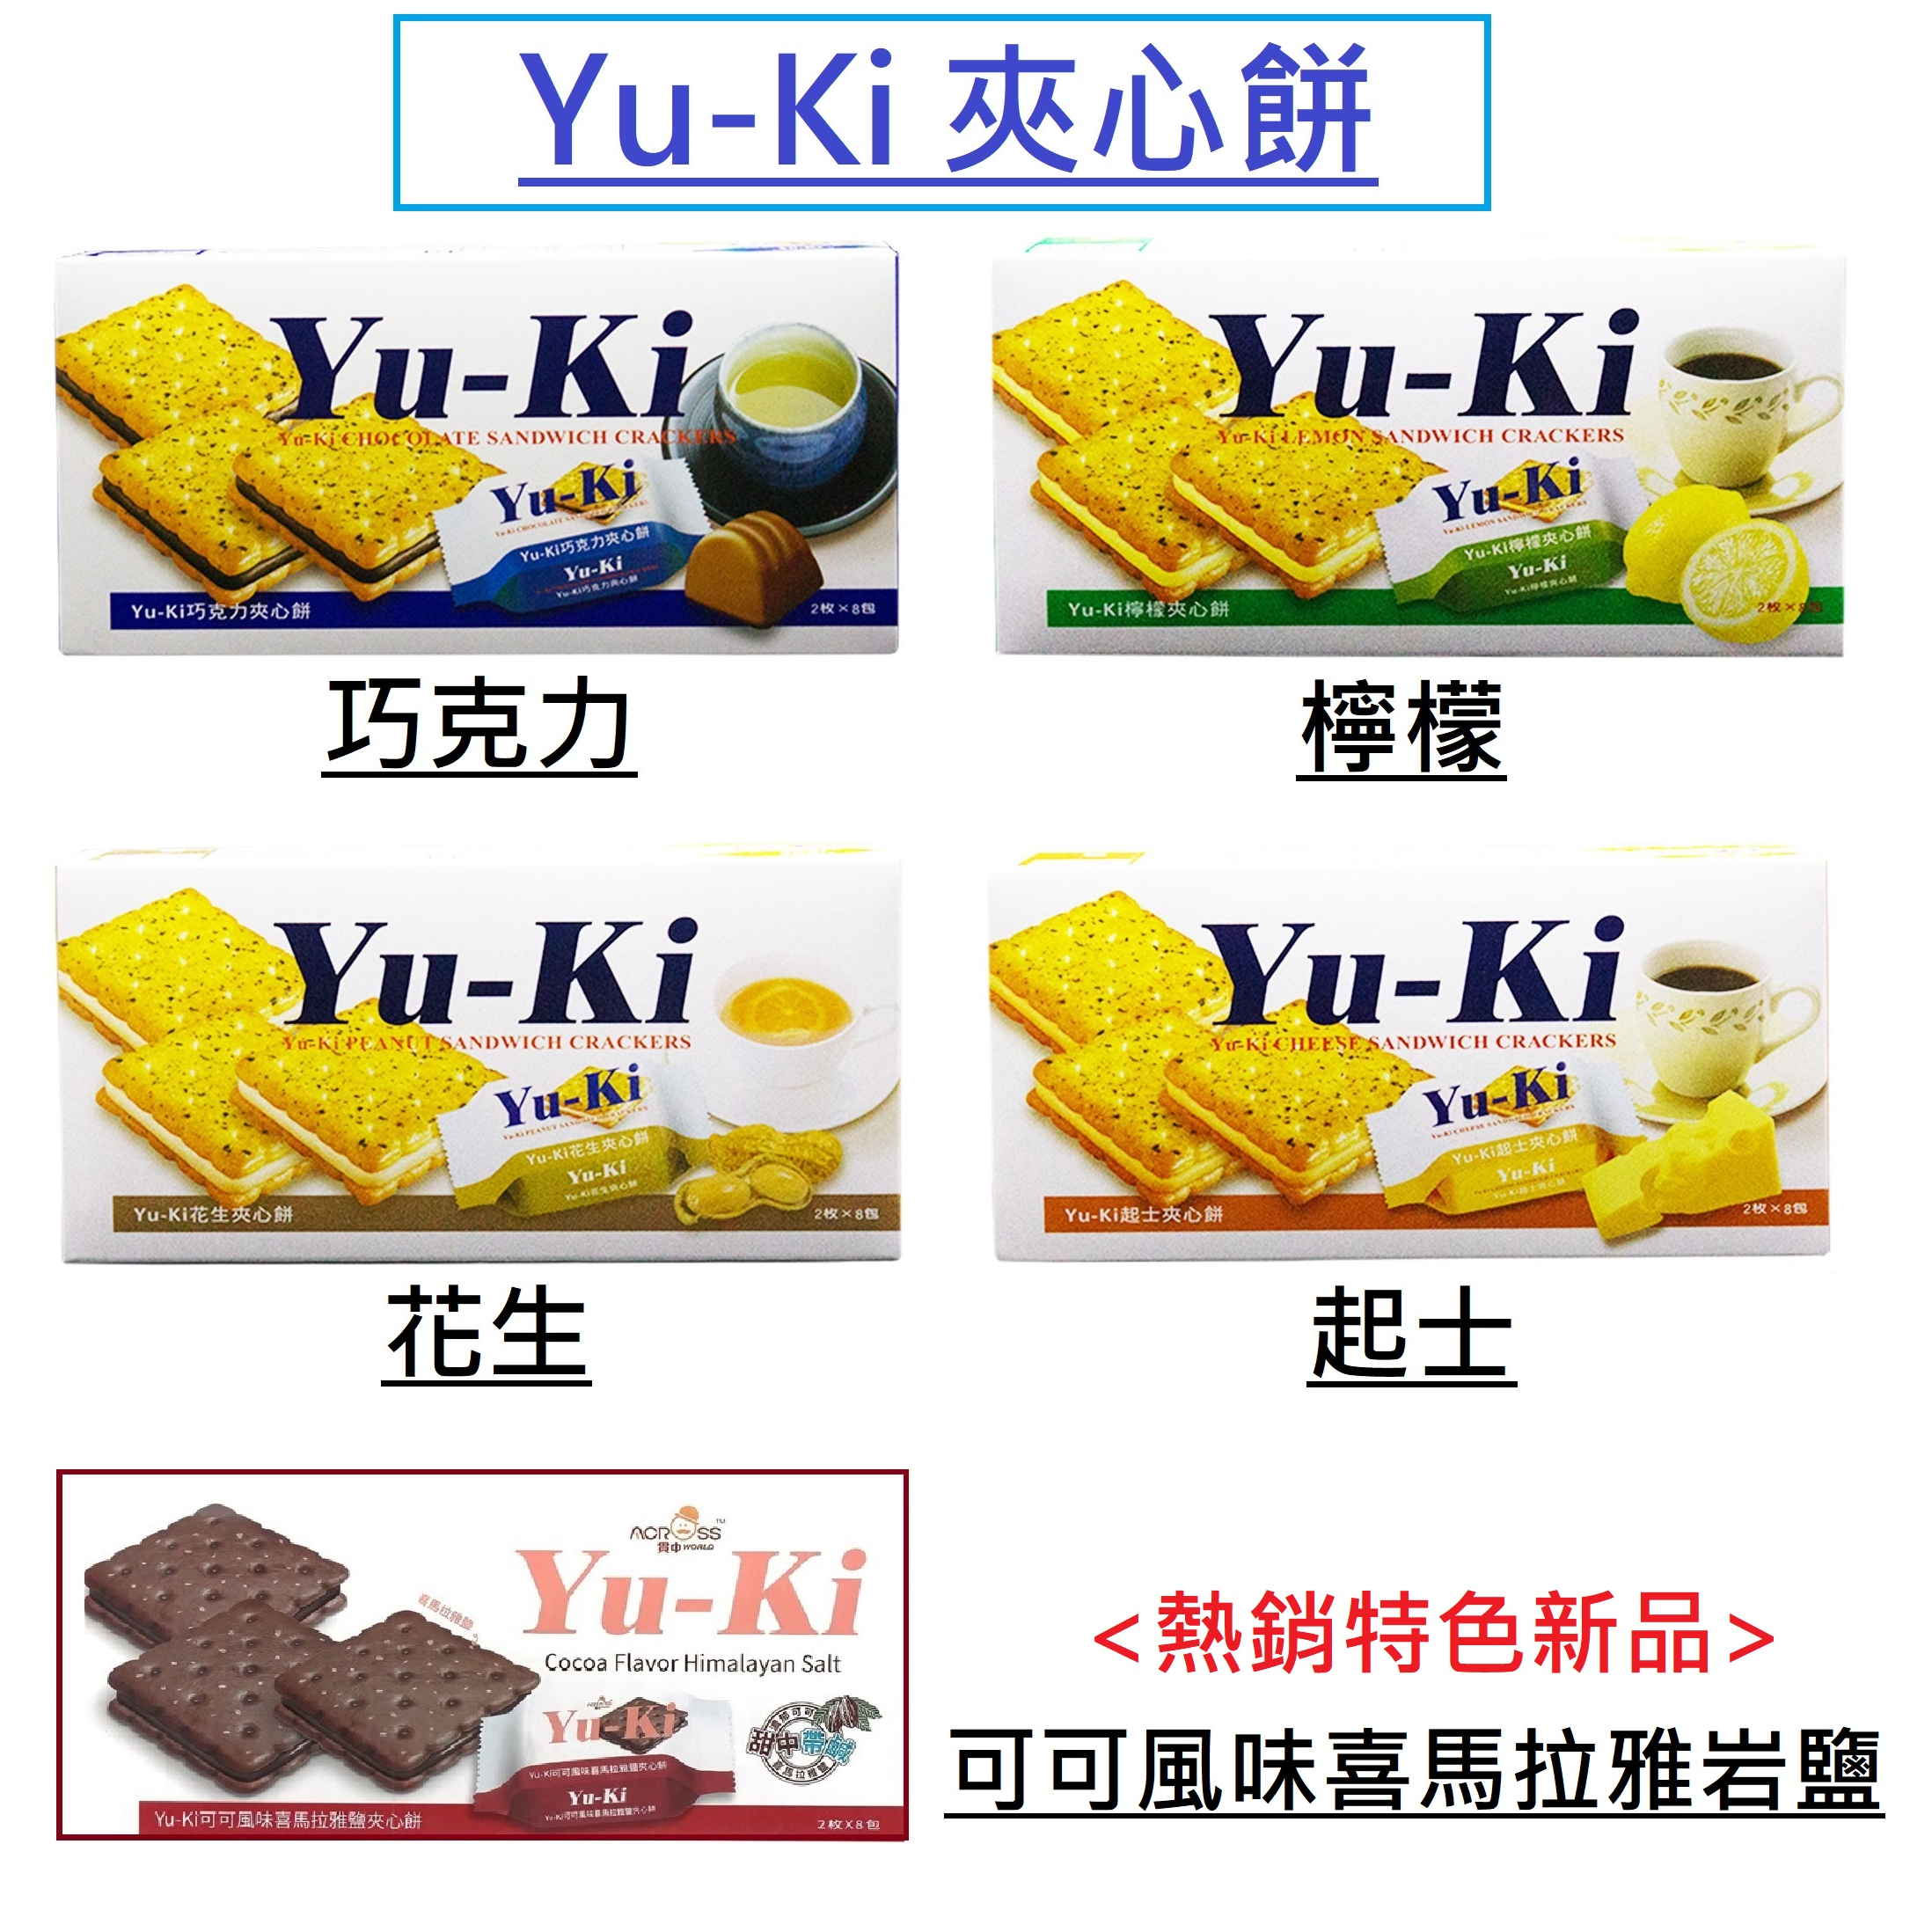 [現貨開發票] Yu-Ki 夾心餅乾 可可風味喜馬拉雅鹽 / 檸檬 / 起士 / 花生 150g YU KI YU-KI